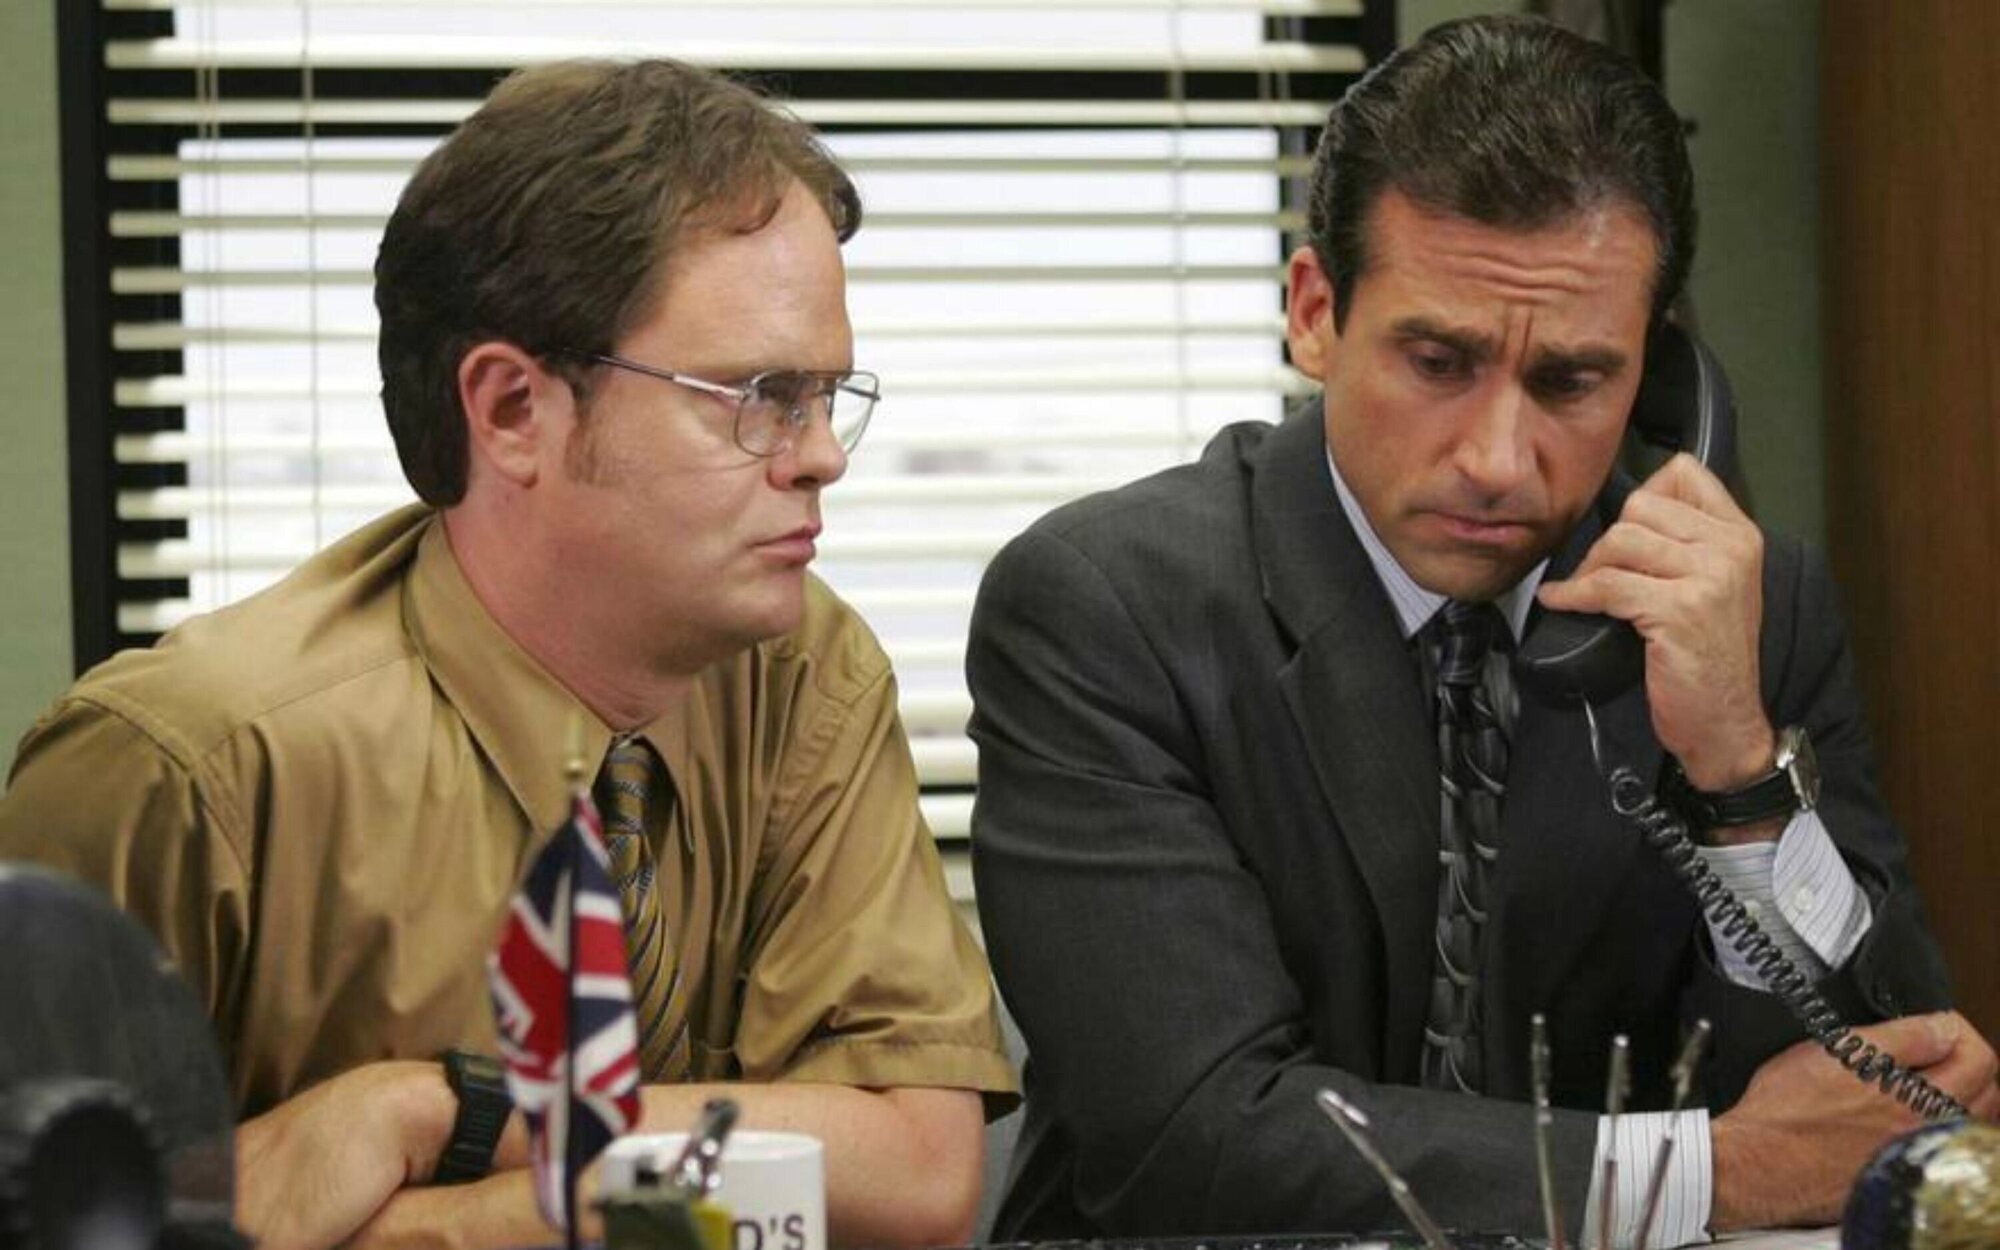 'The Office' podría regresar con un reboot a cargo del creador de la serie original